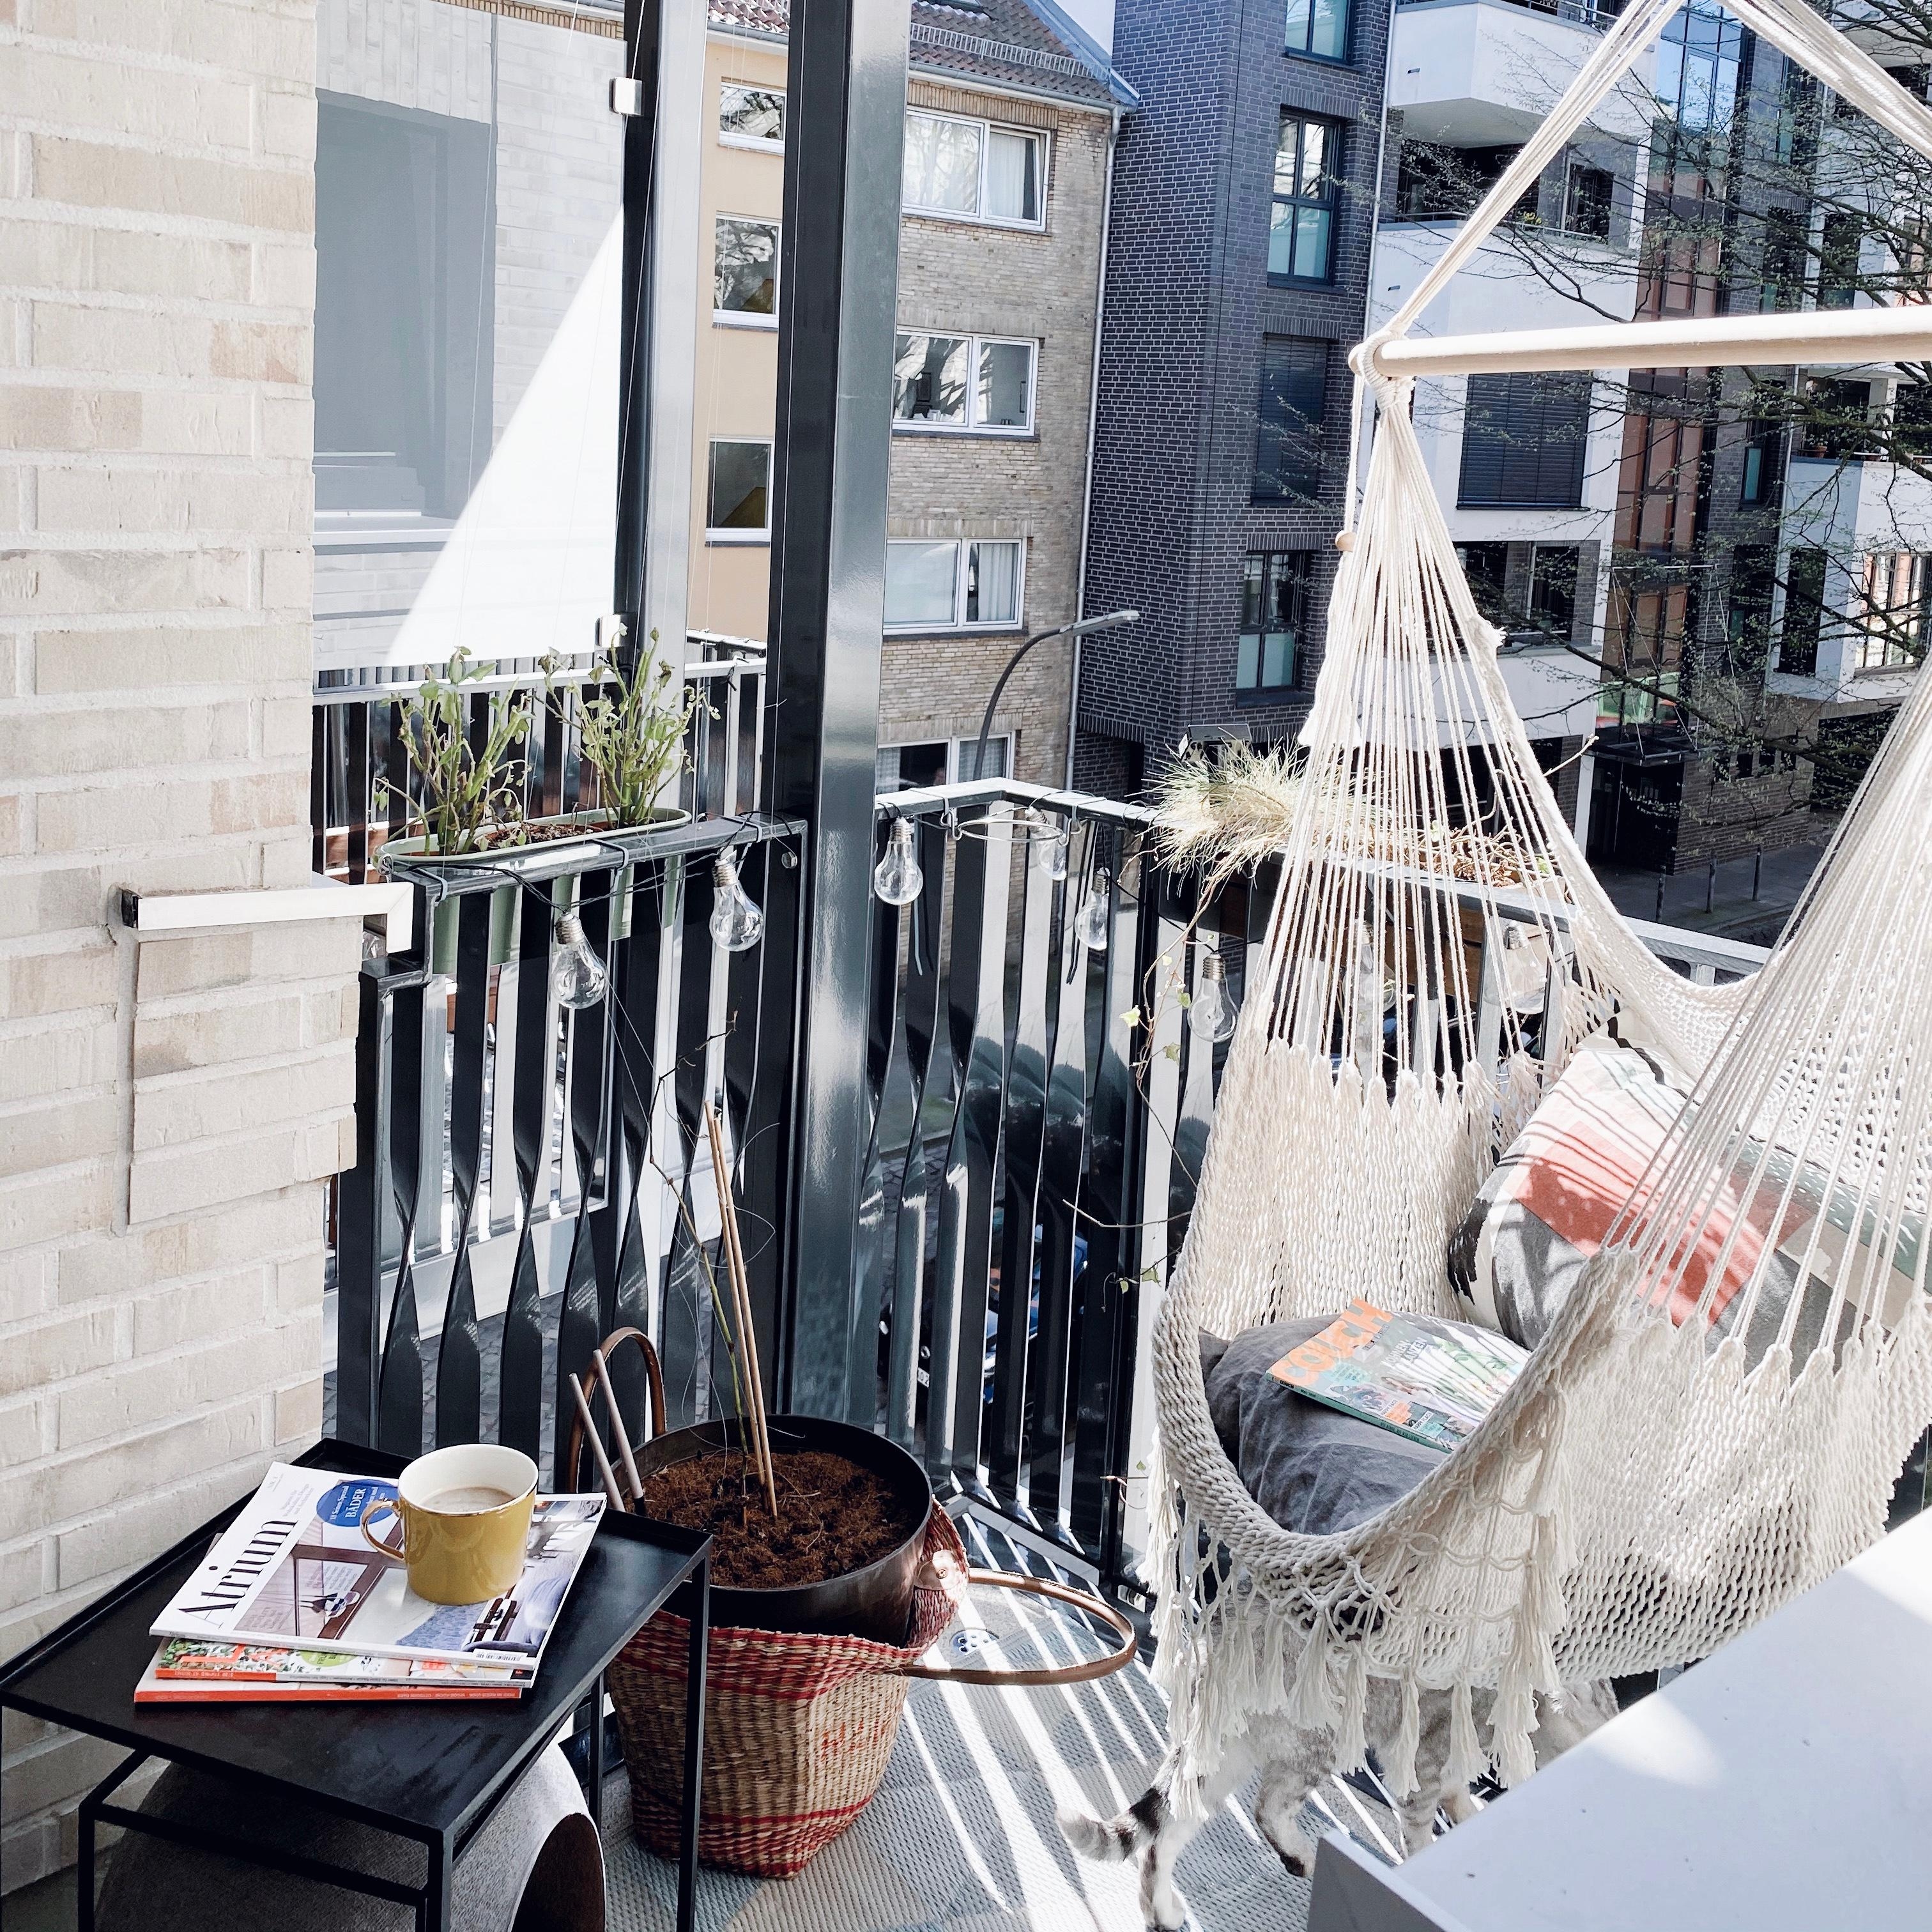 Endlich wieder Zeit für #balkon & #hängesessel #summervibes #balkoninspo 